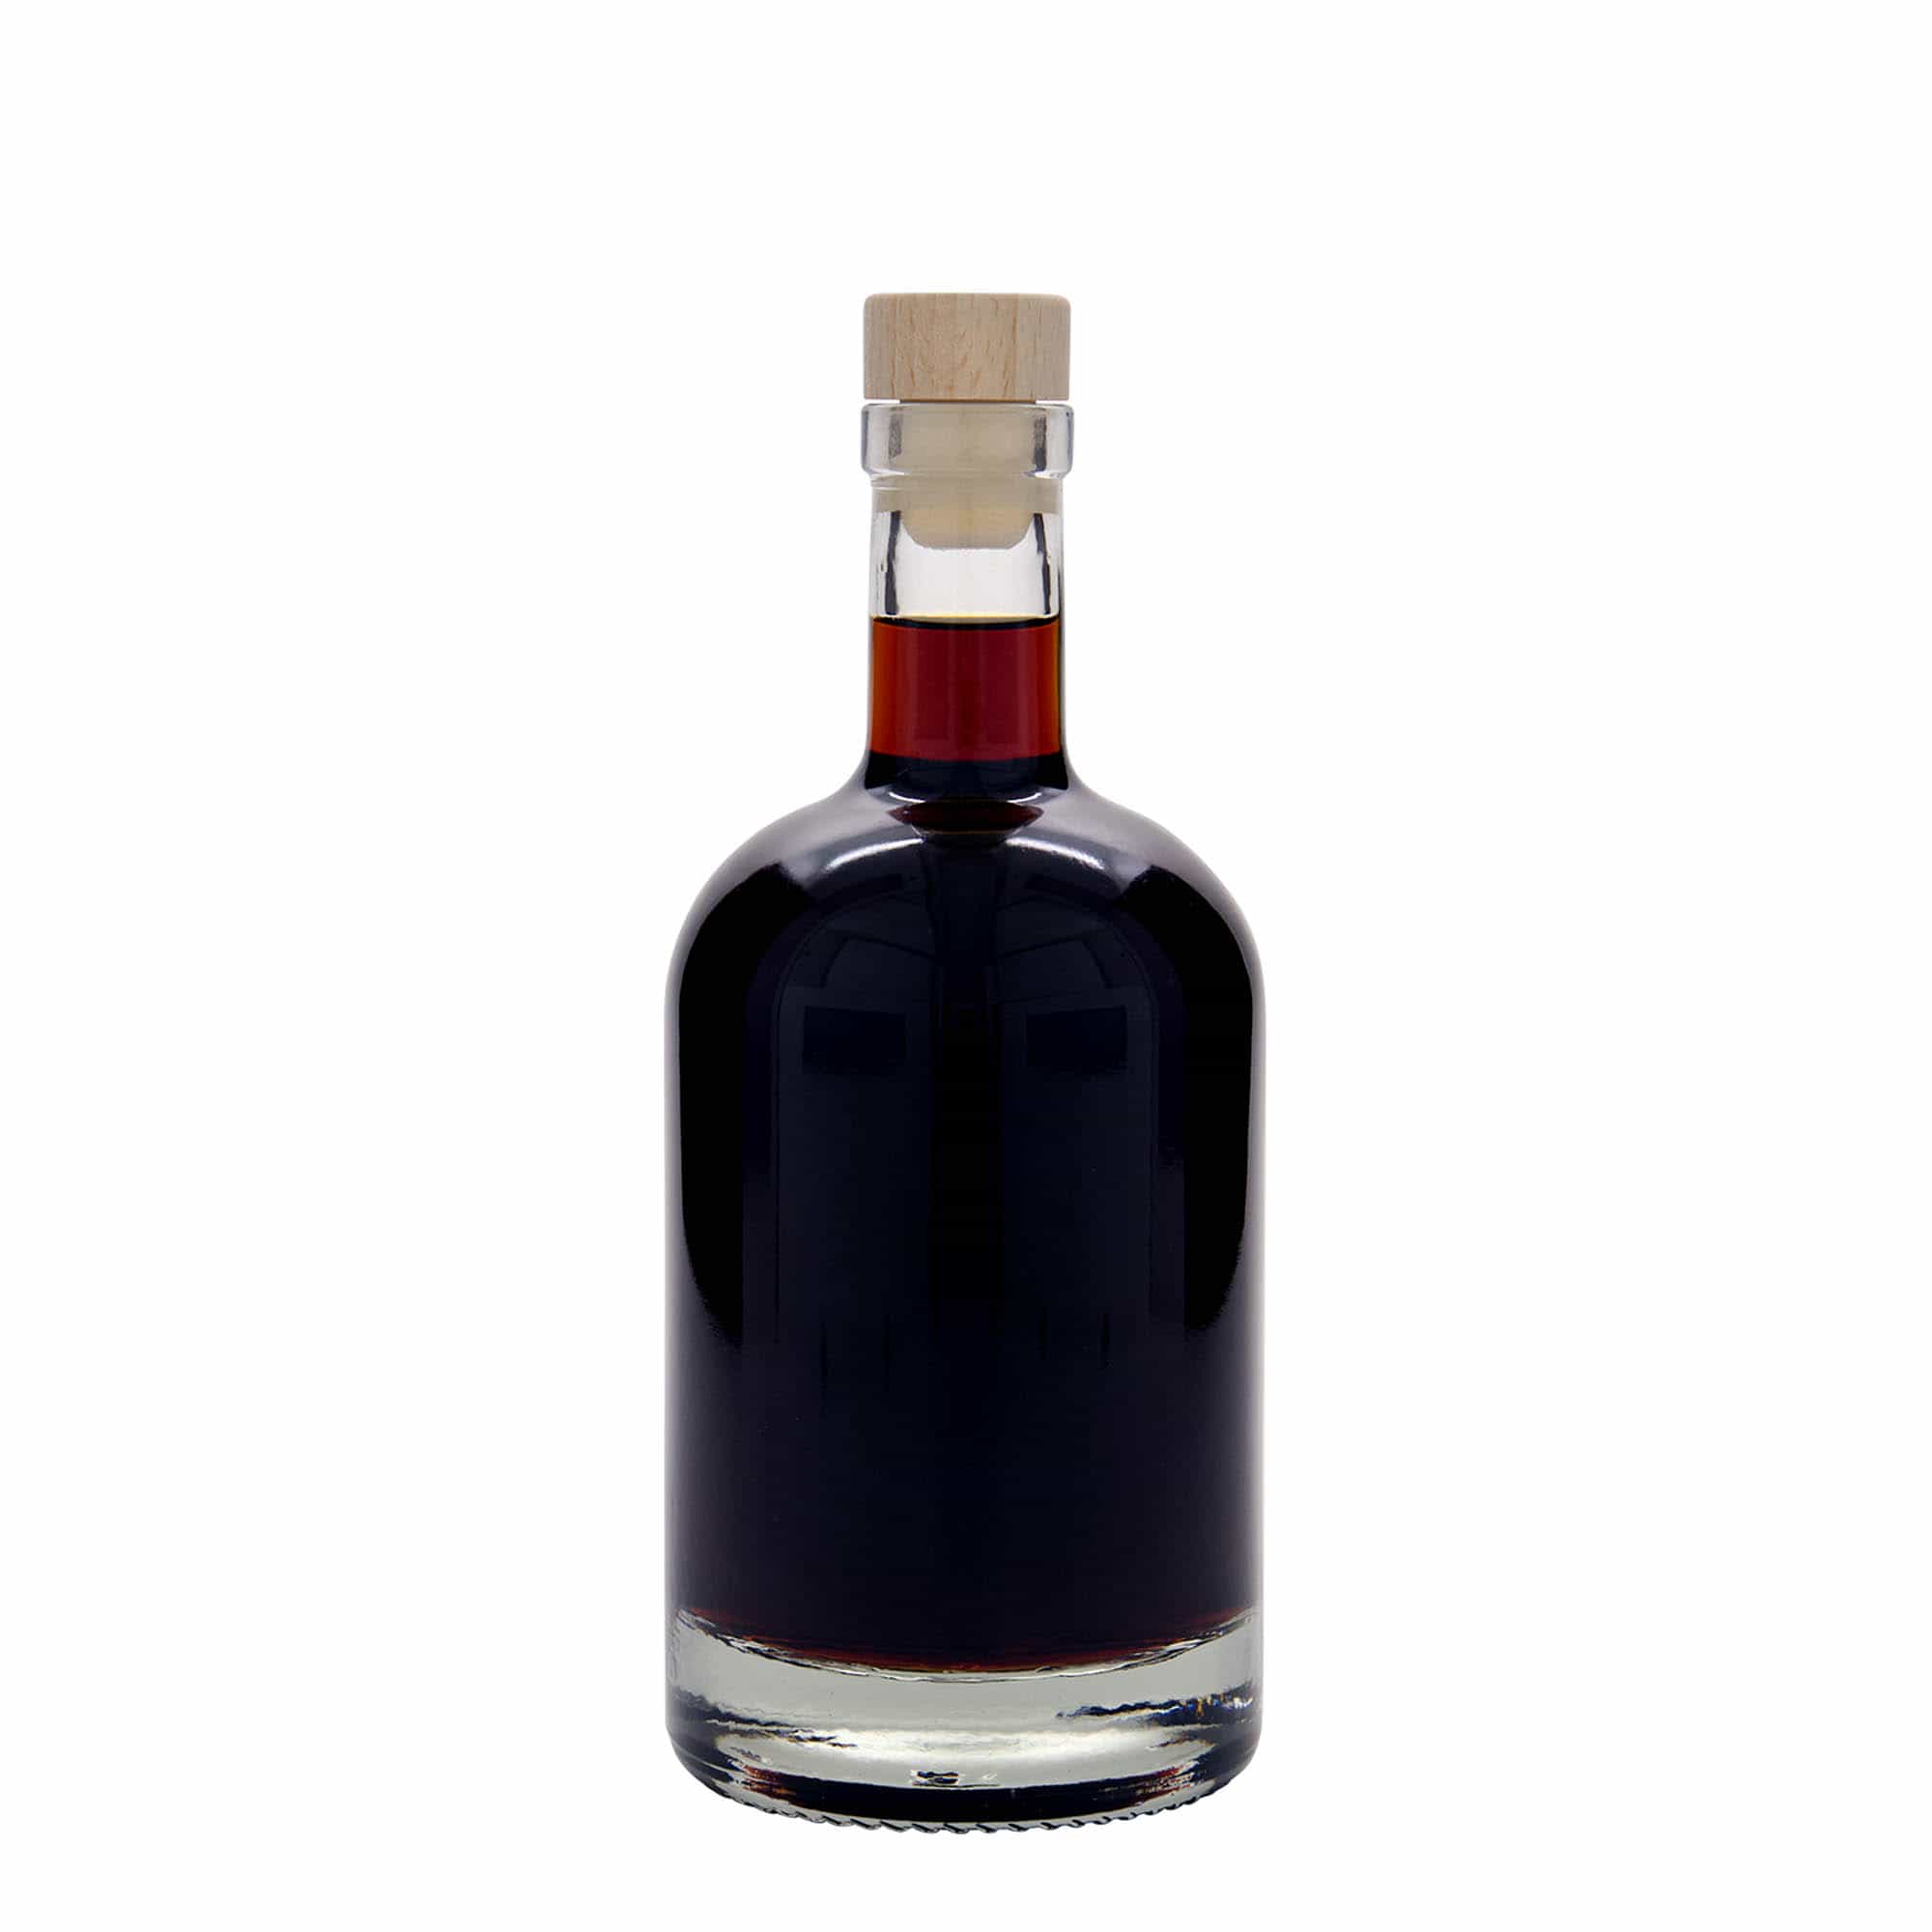 500 ml glass bottle 'First Class', closure: cork